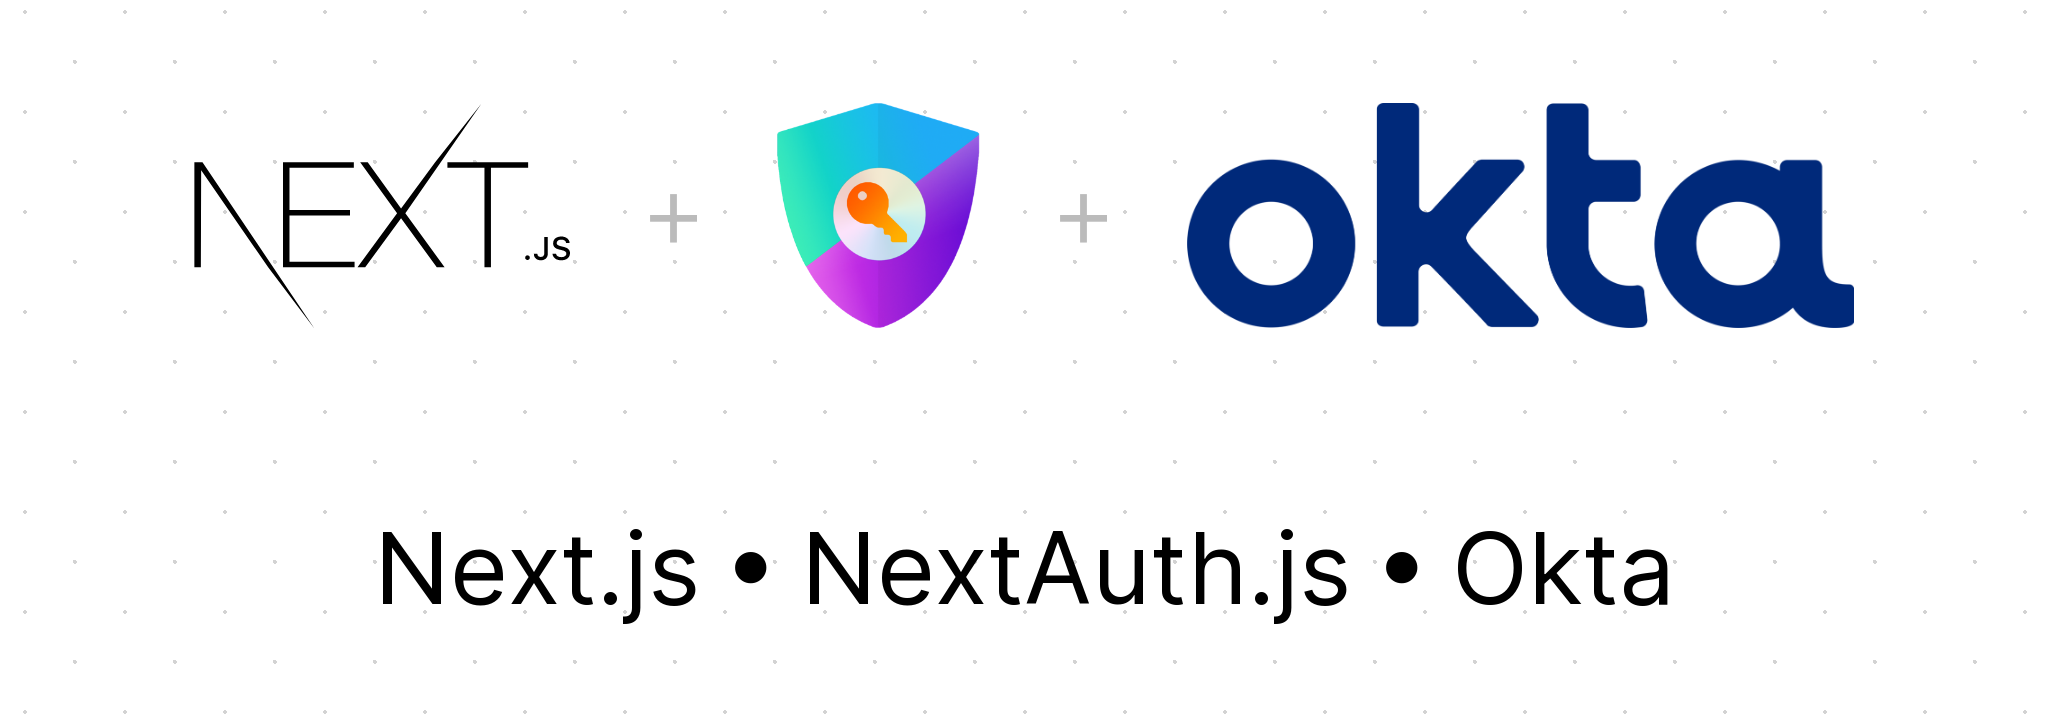 Featured image with Next.js, NextAuth.js, and Okta logos